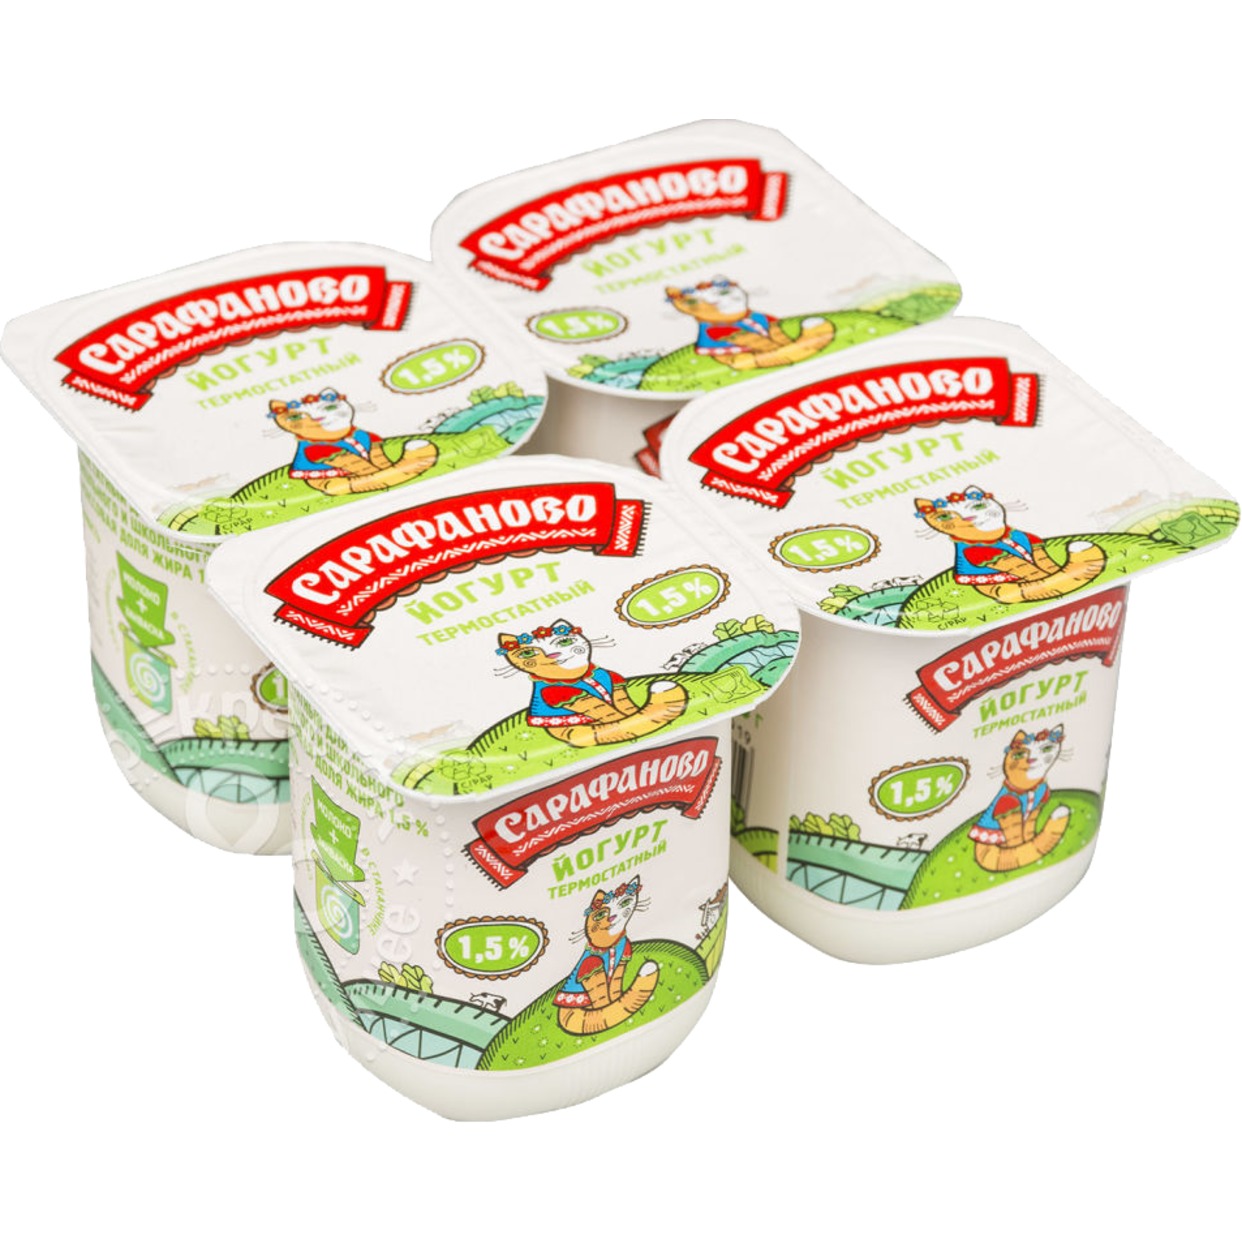 САРАФ.Йогурт термостат.дет.1,5% 125г по акции в Пятерочке